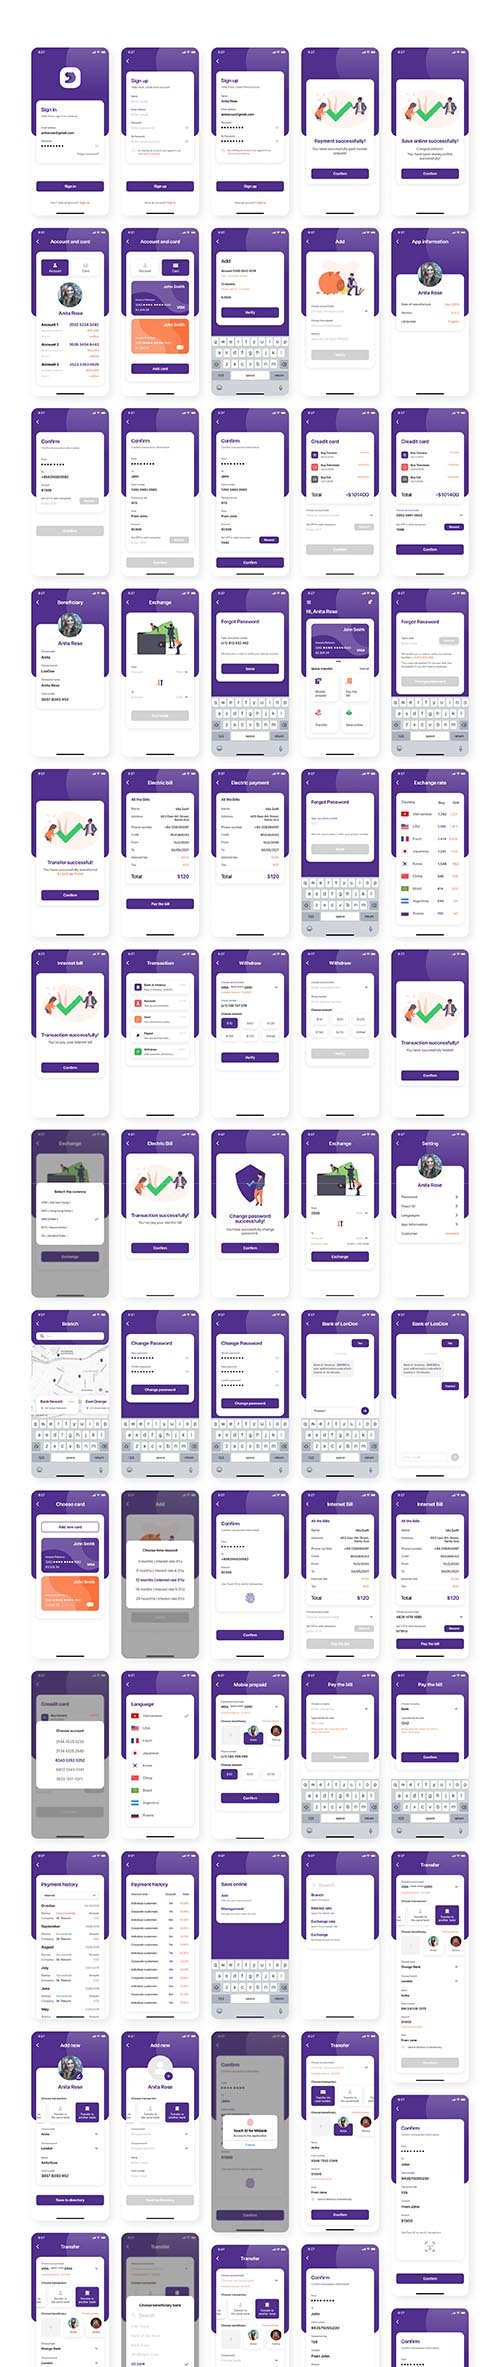 Miwal - Banking App UI Kit